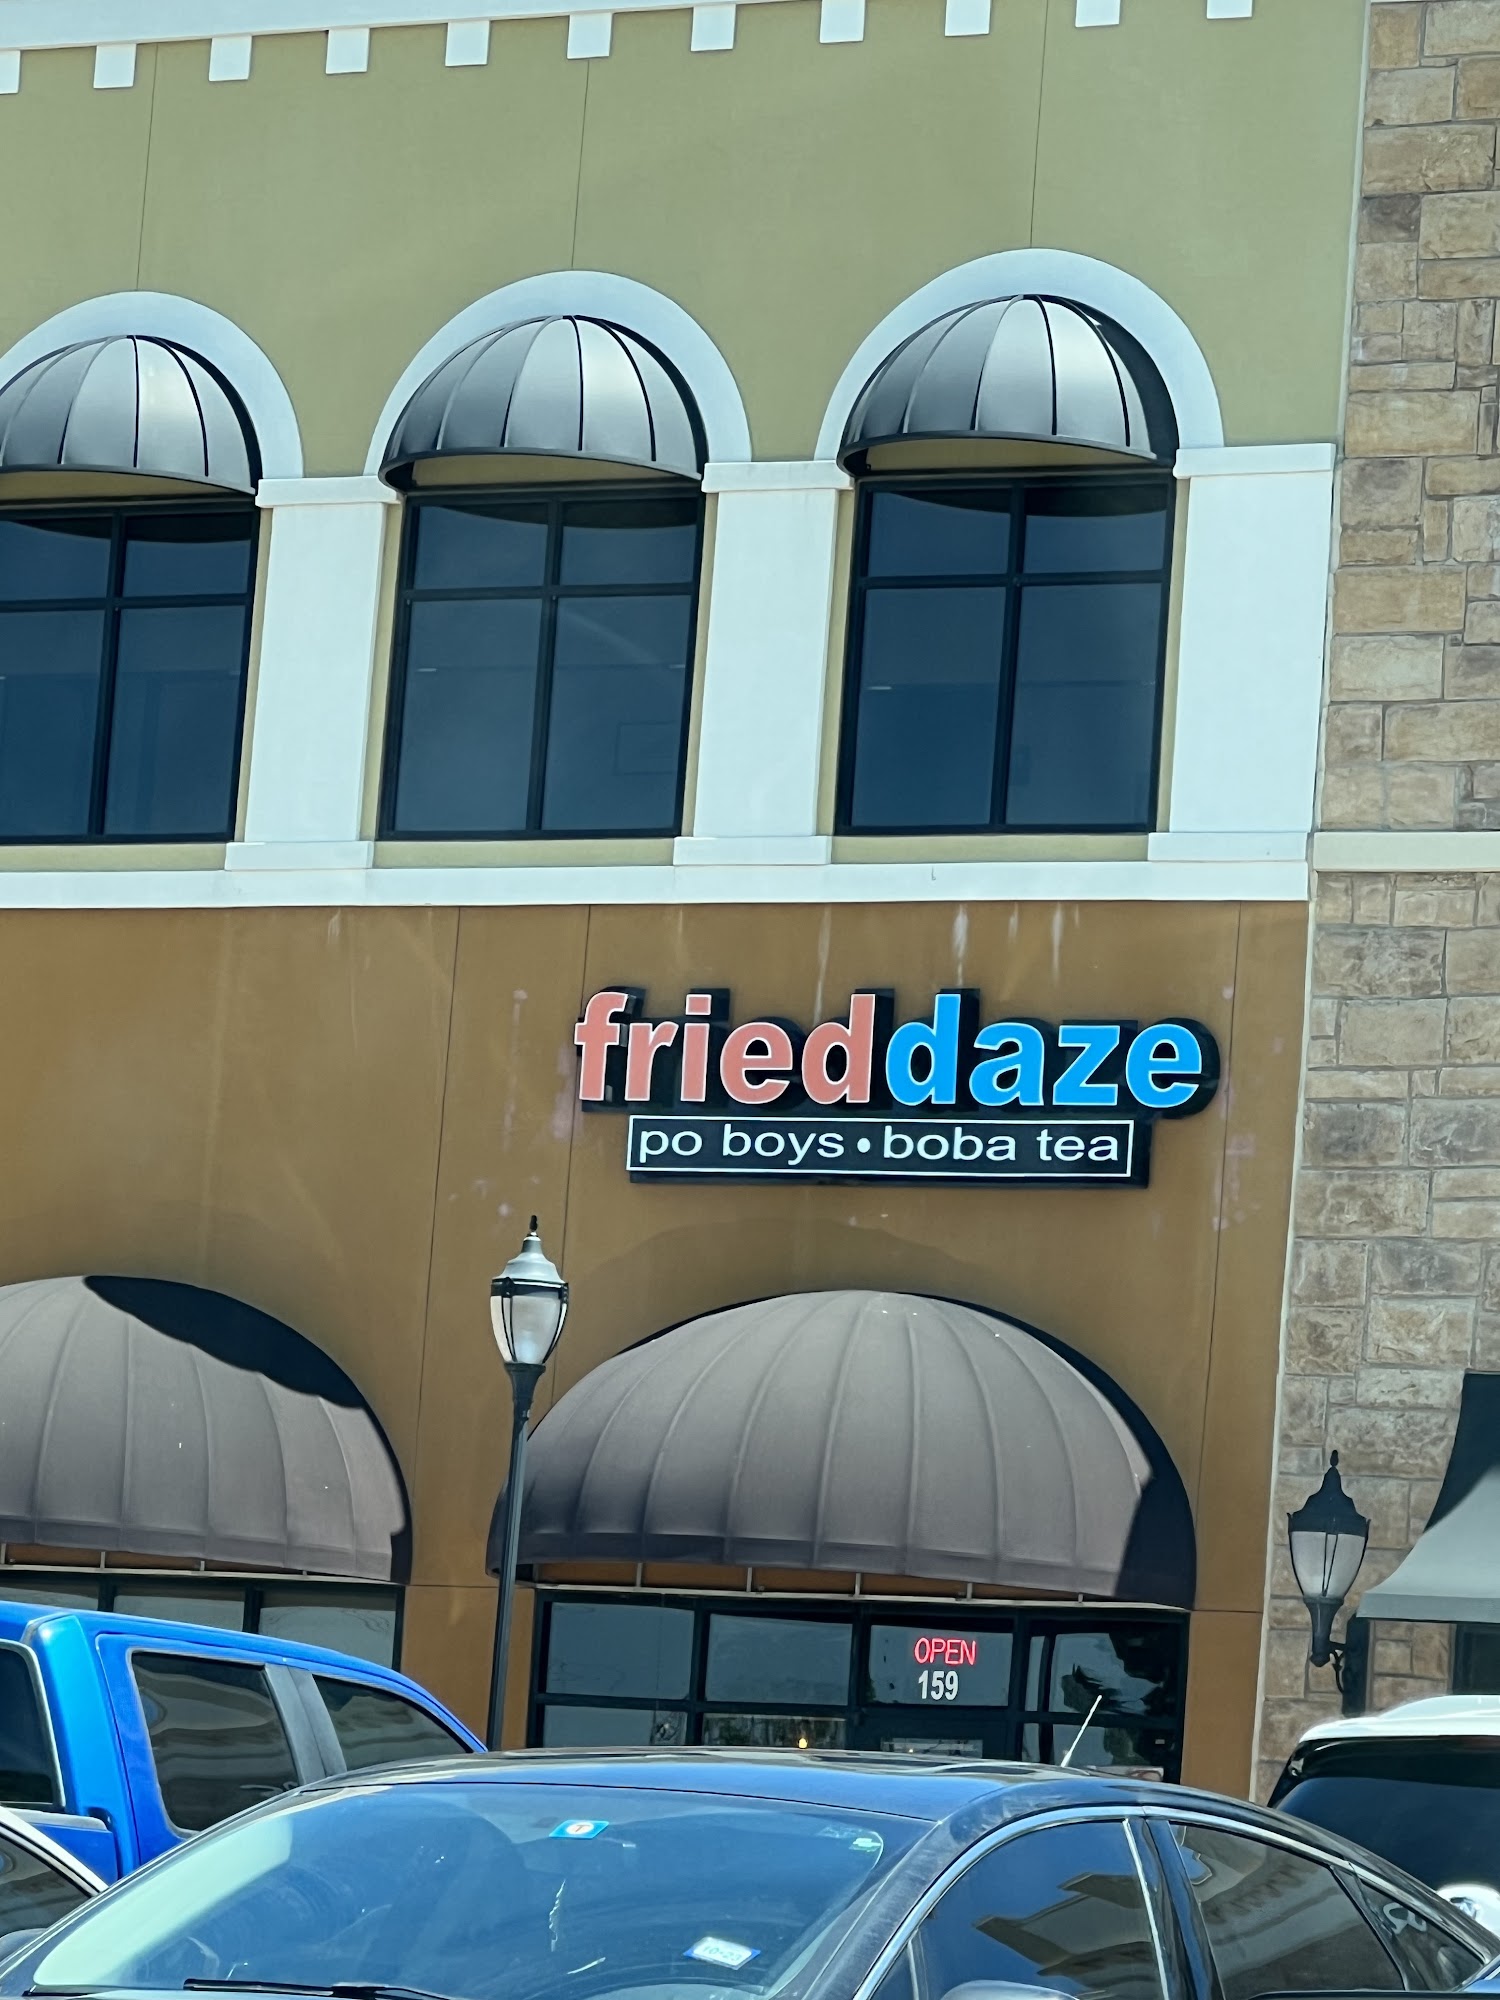 fried daze